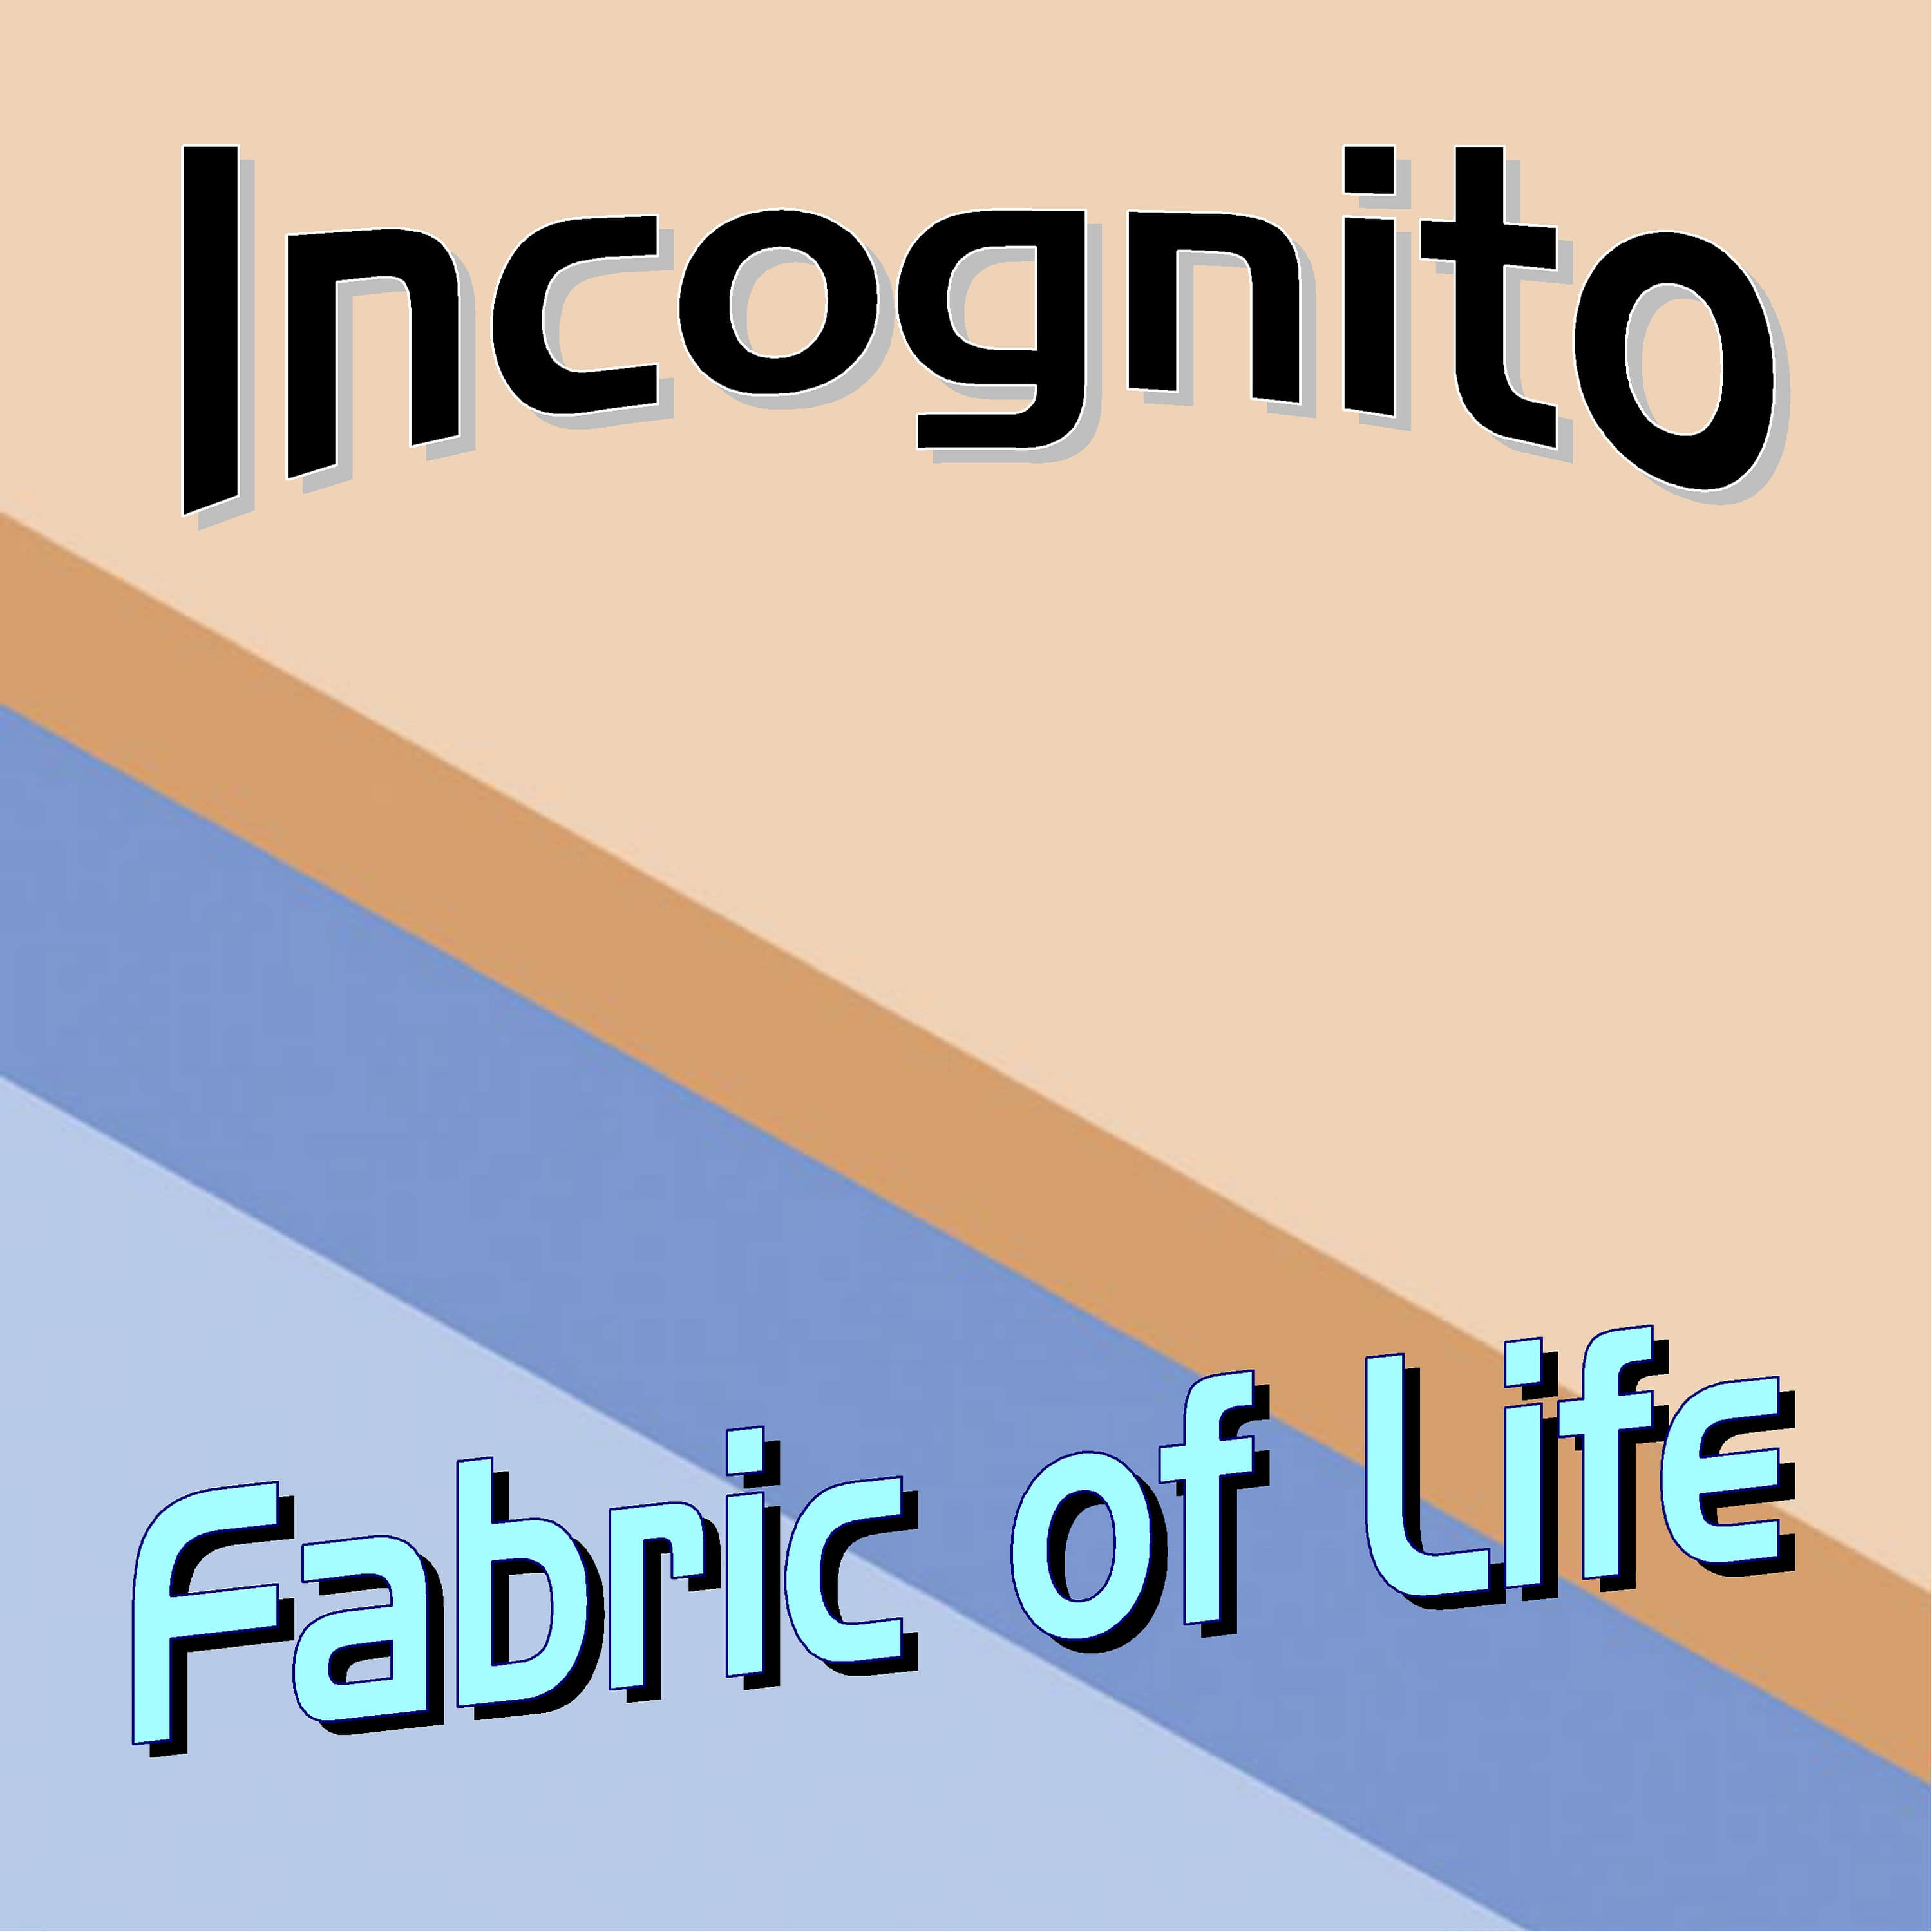 Incognito-One 4 All